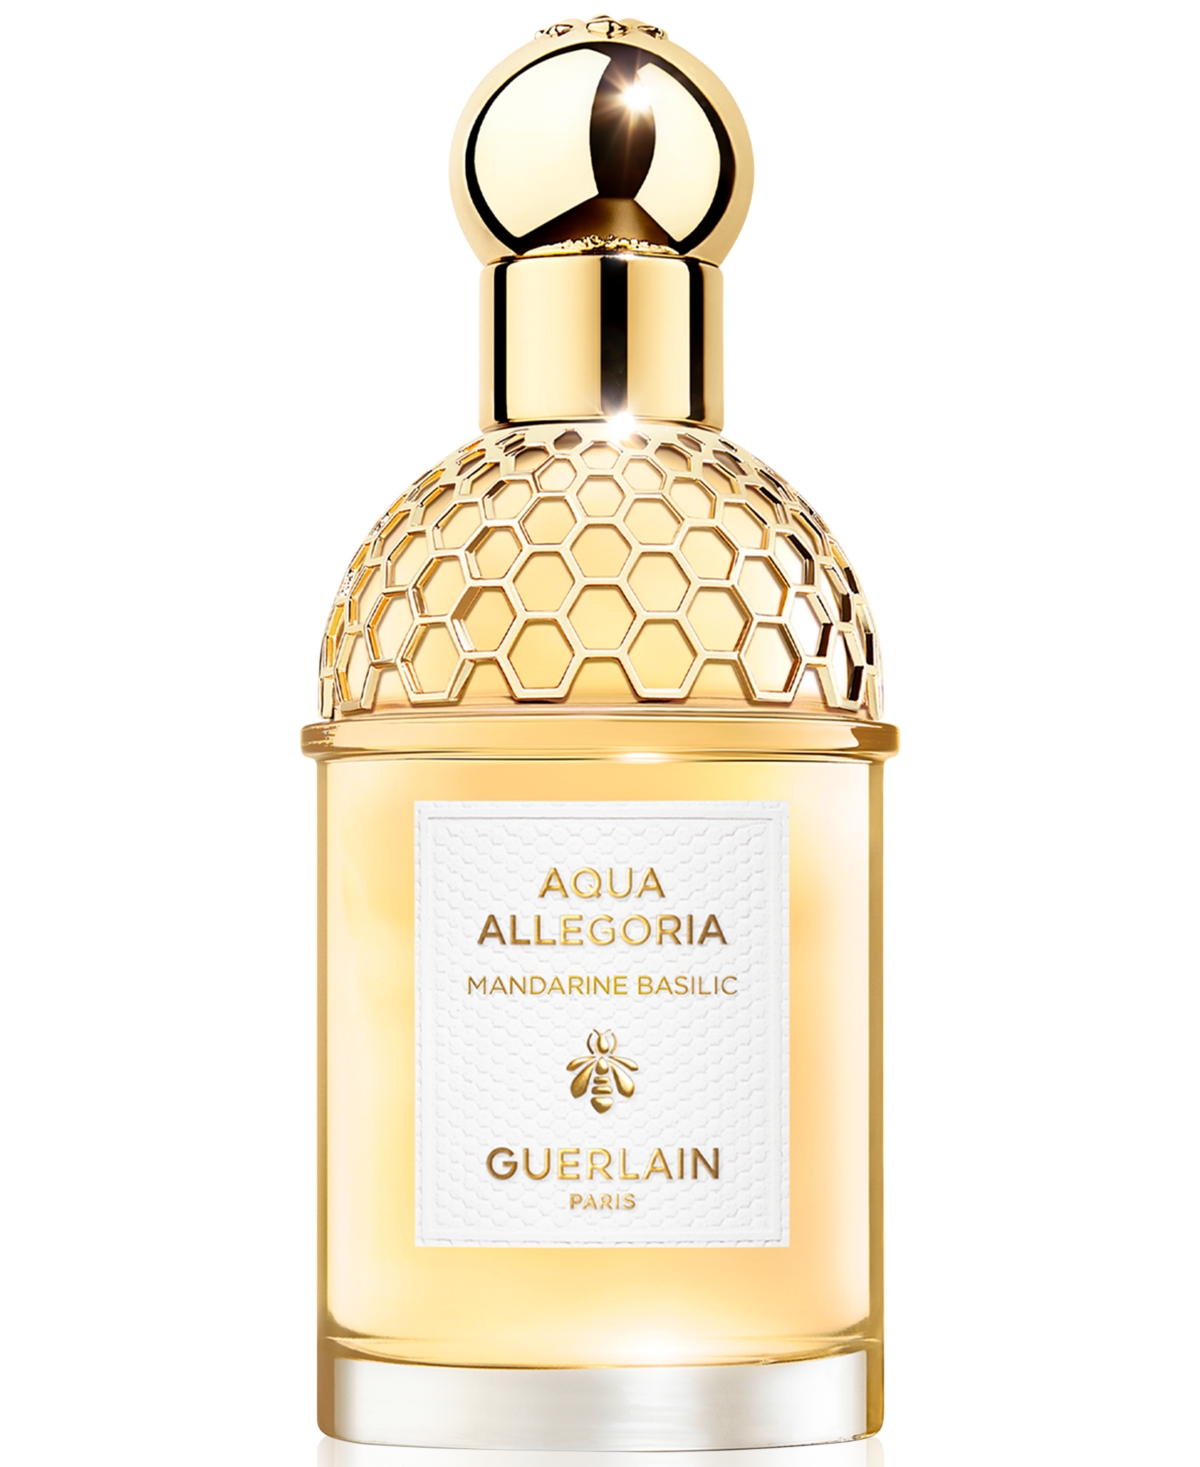 Guerlain Aqua Allegoria Mandarine Basilic Eau de Toilette, 2.5 oz.